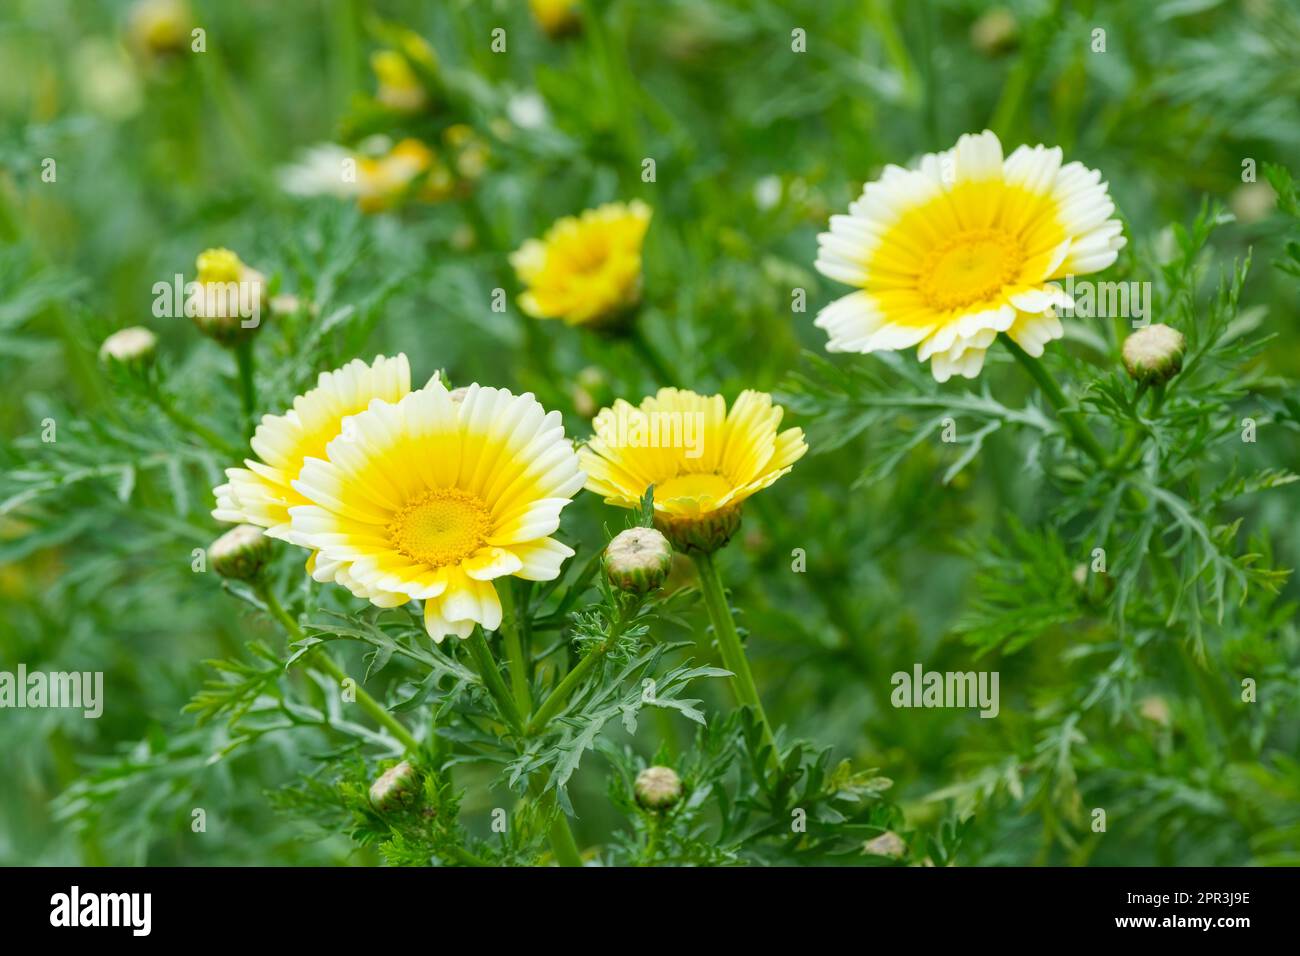 Hacken Sie Suey Greens Shungiku, Chrysanthemen, weiße Blumen mit gelben Mittelpunkten Stockfoto